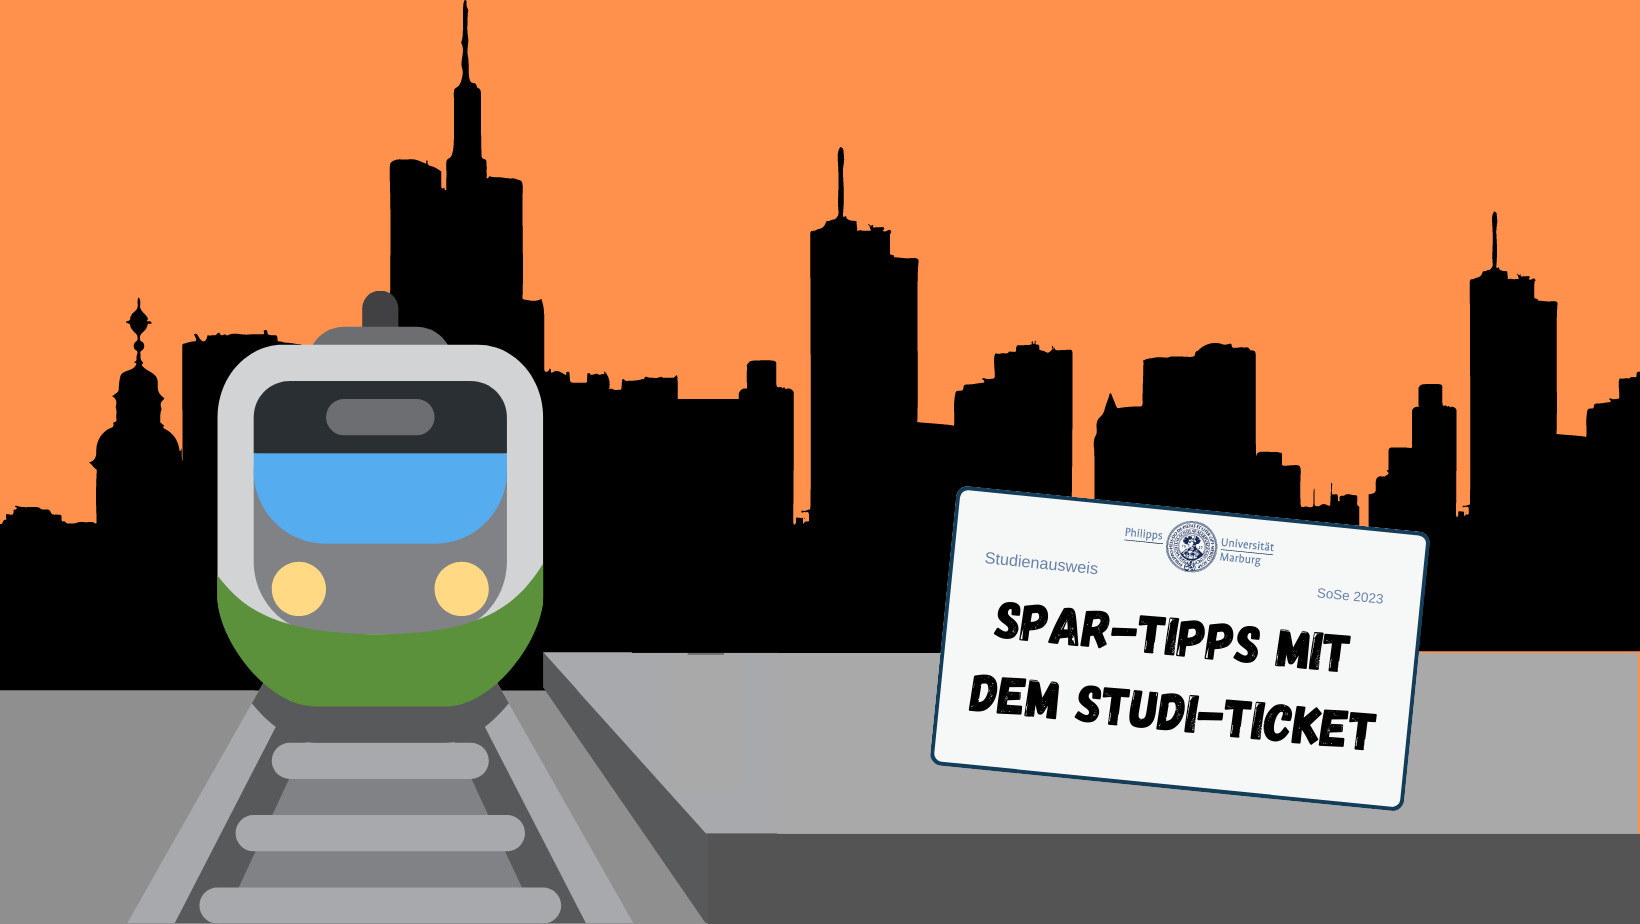 Spar-Tipps mit dem Studi-Ticket: Ausflüge in die Metropolen Hessens